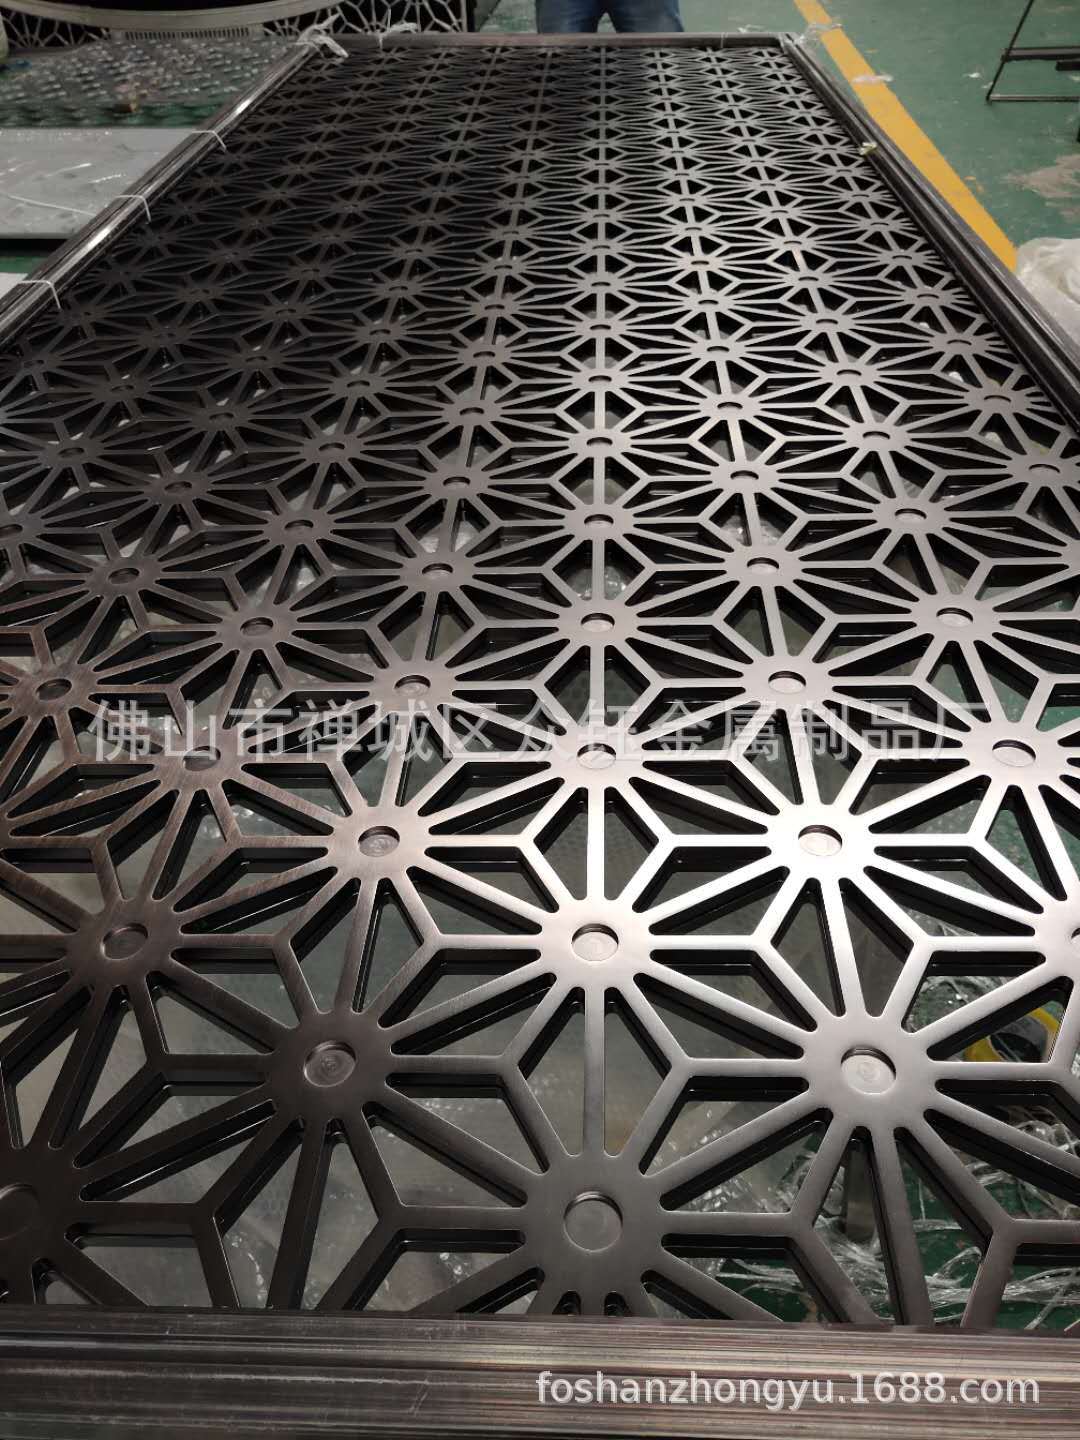 厂家直销 工装实心铝板雕刻屏风专业雕刻厂家示例图8